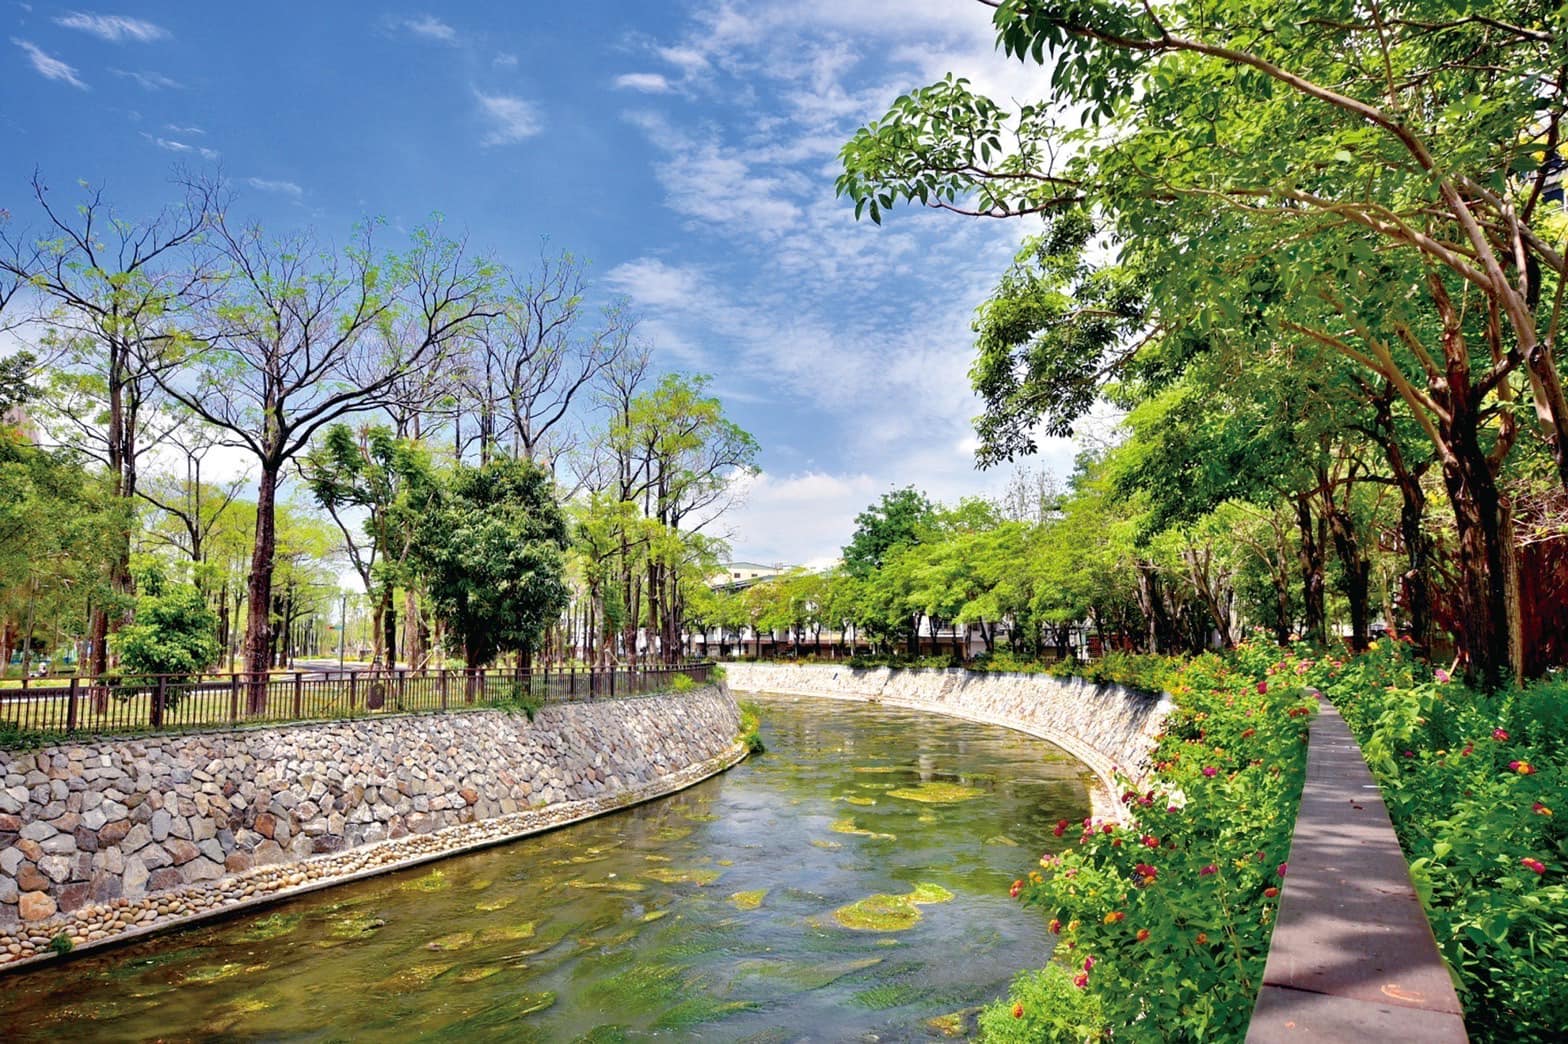 綠 川 興 大 段 河 岸 兩 旁 綠 意 盎 然 ， 形 成 美 麗 綠 廊 道             圖 片 來 源 ： 臺 中 市 政 府 水 利 局 